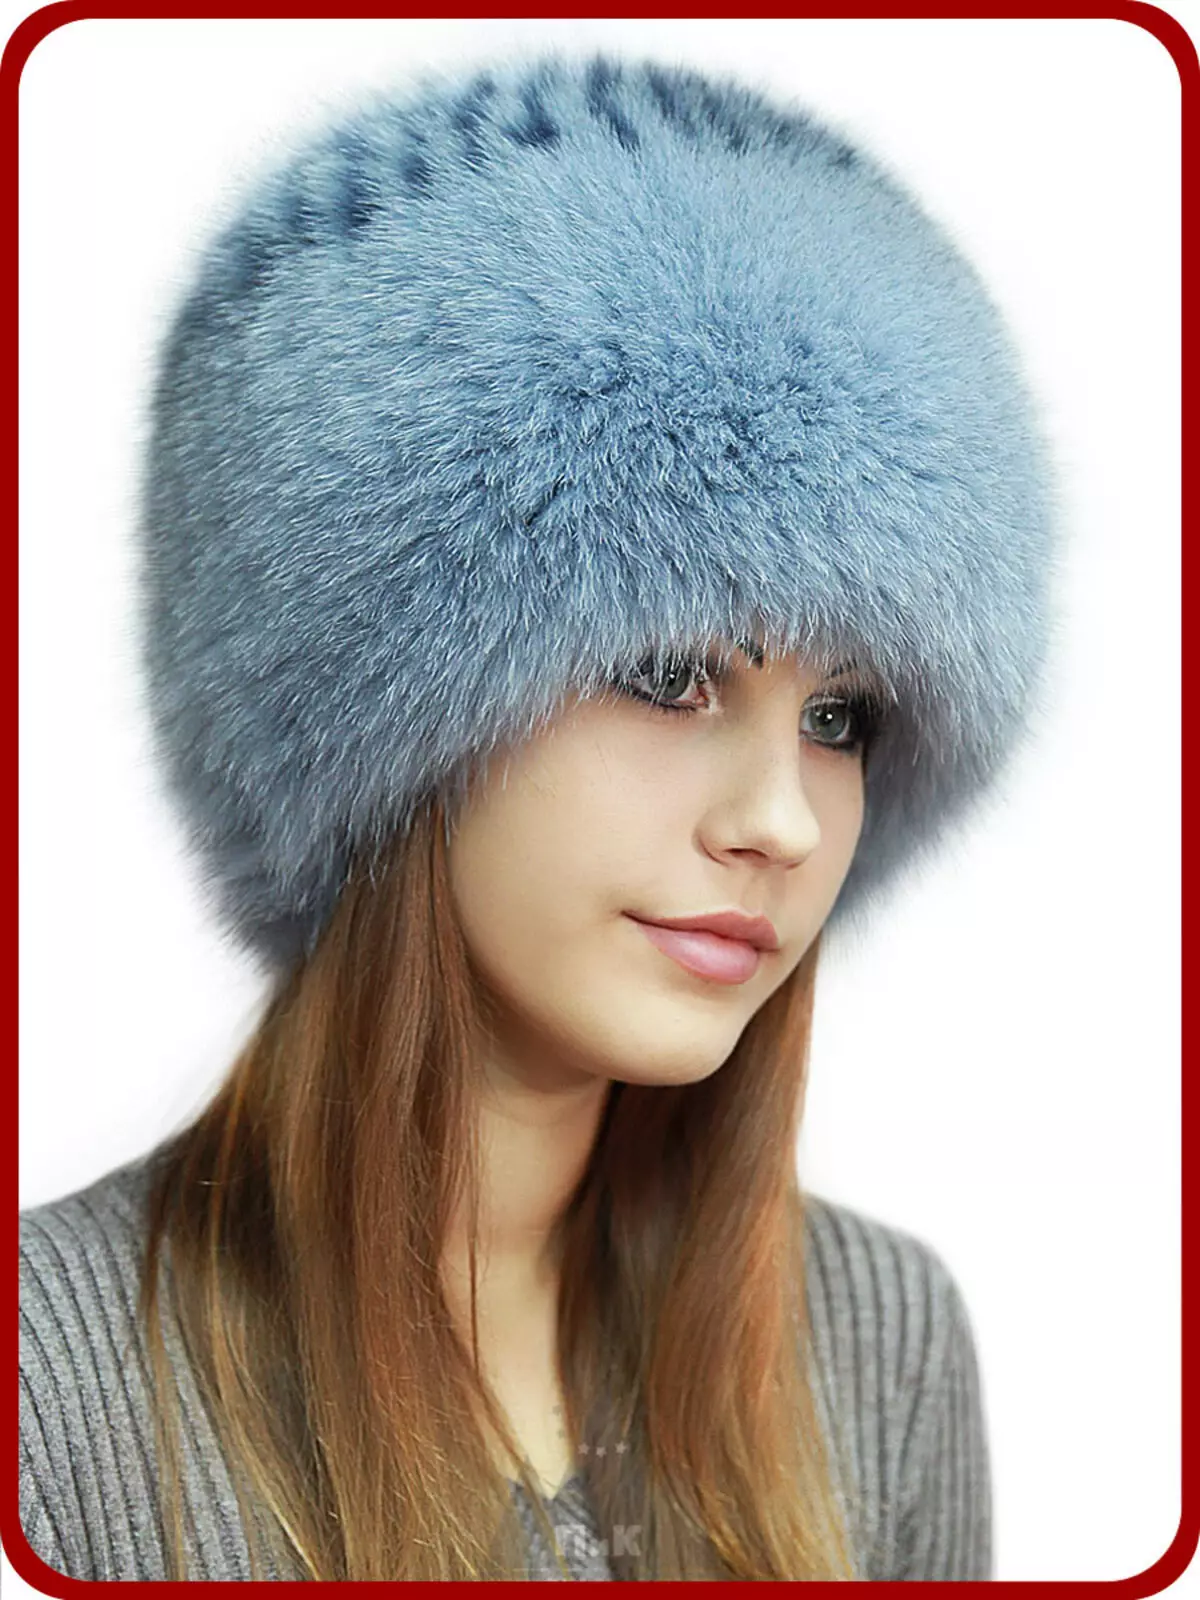 Fur Women's Hats (117 Photos): Hat-Tape, Fashionable Models 2021-2022 Made of Fur Chernoburki, Mink at iba pang Natural Fur 2949_63